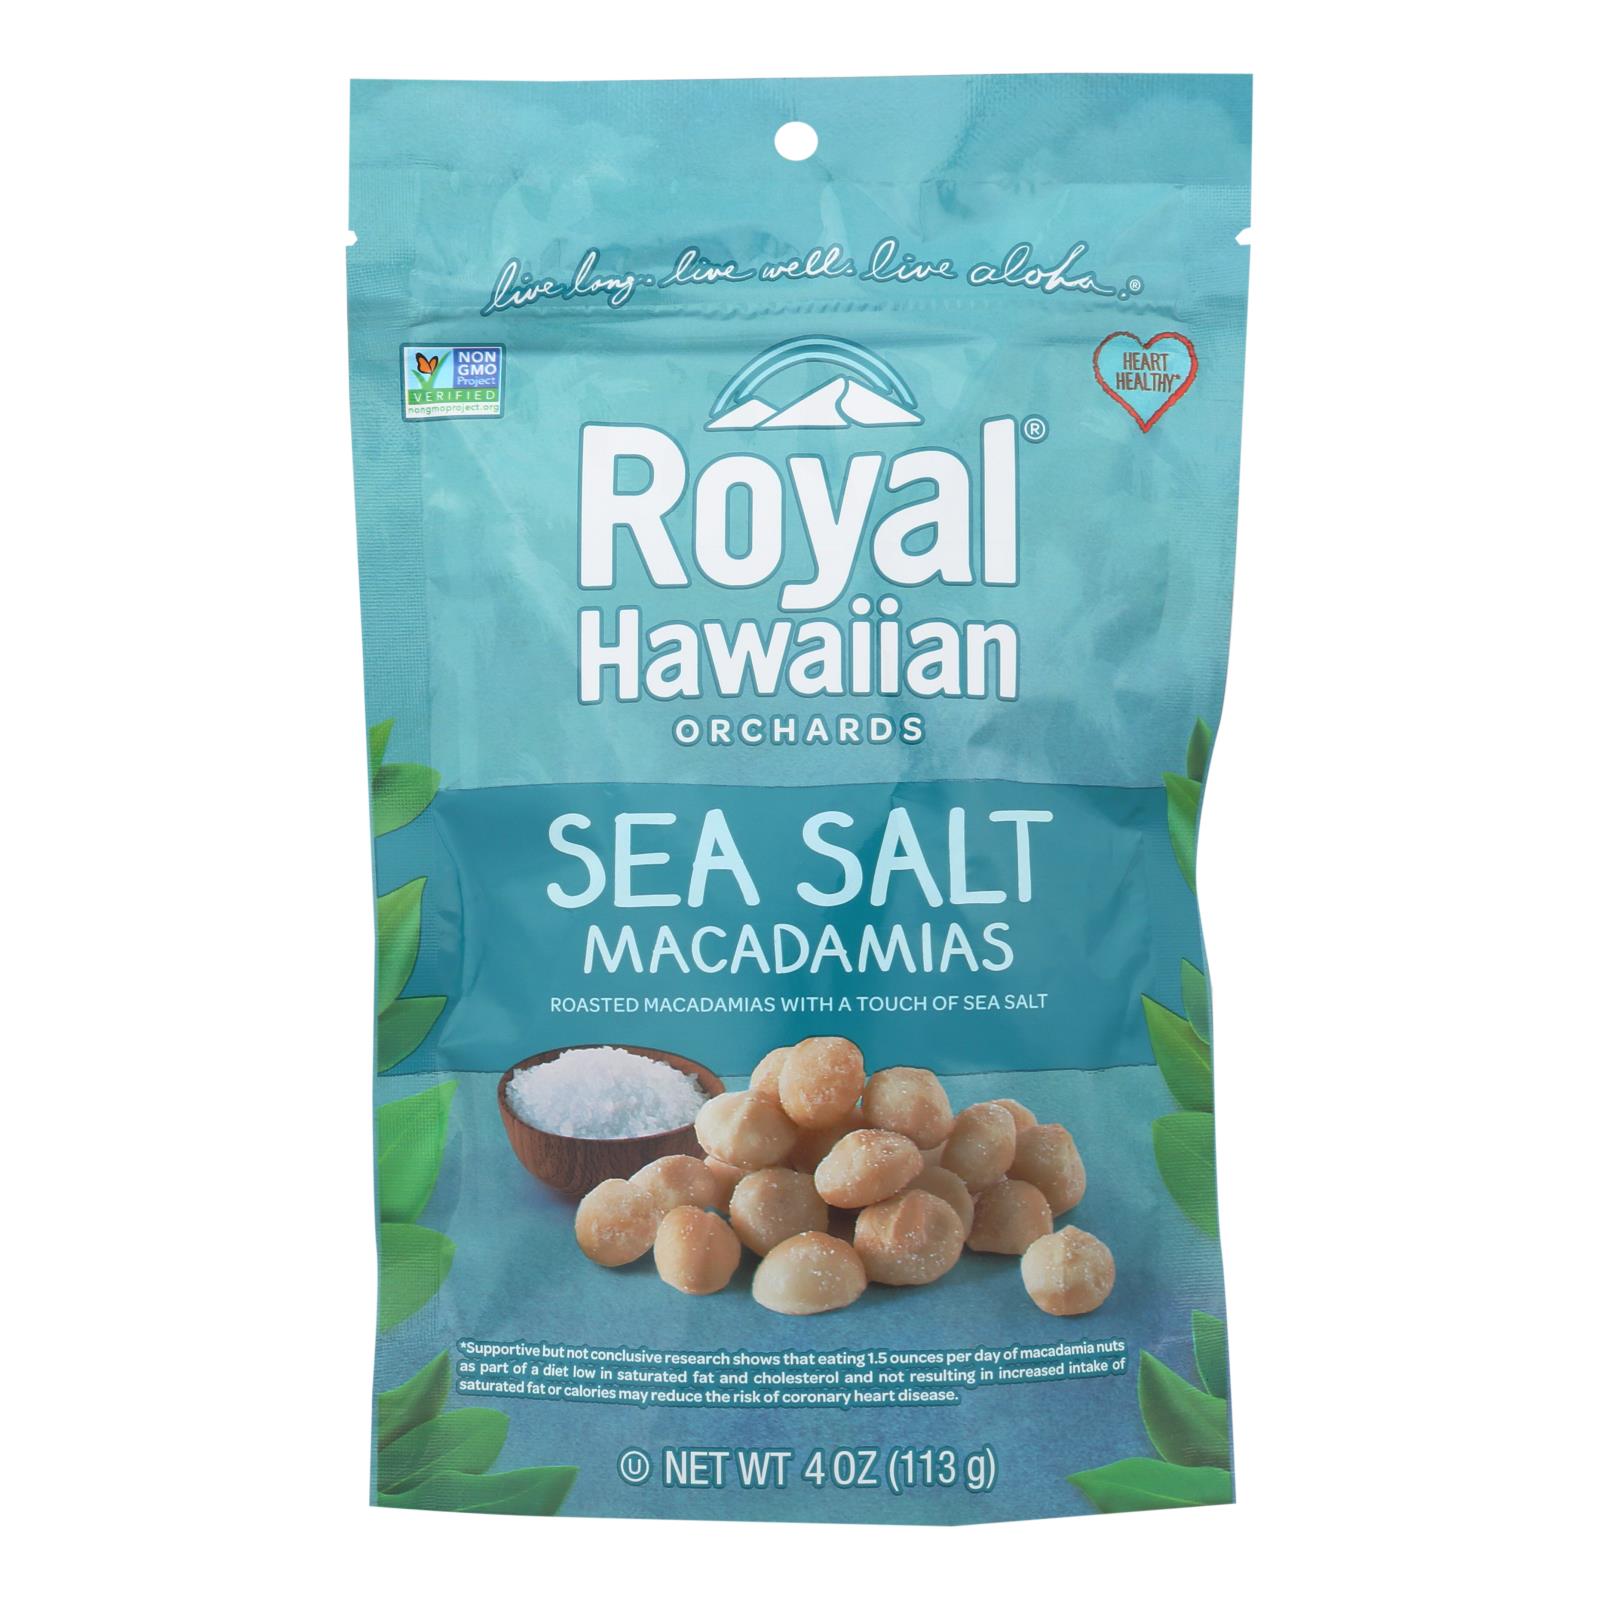 Royal Hawaiian Orchards Macadamias, Sea Salt - 6개 묶음상품 - 4 OZ